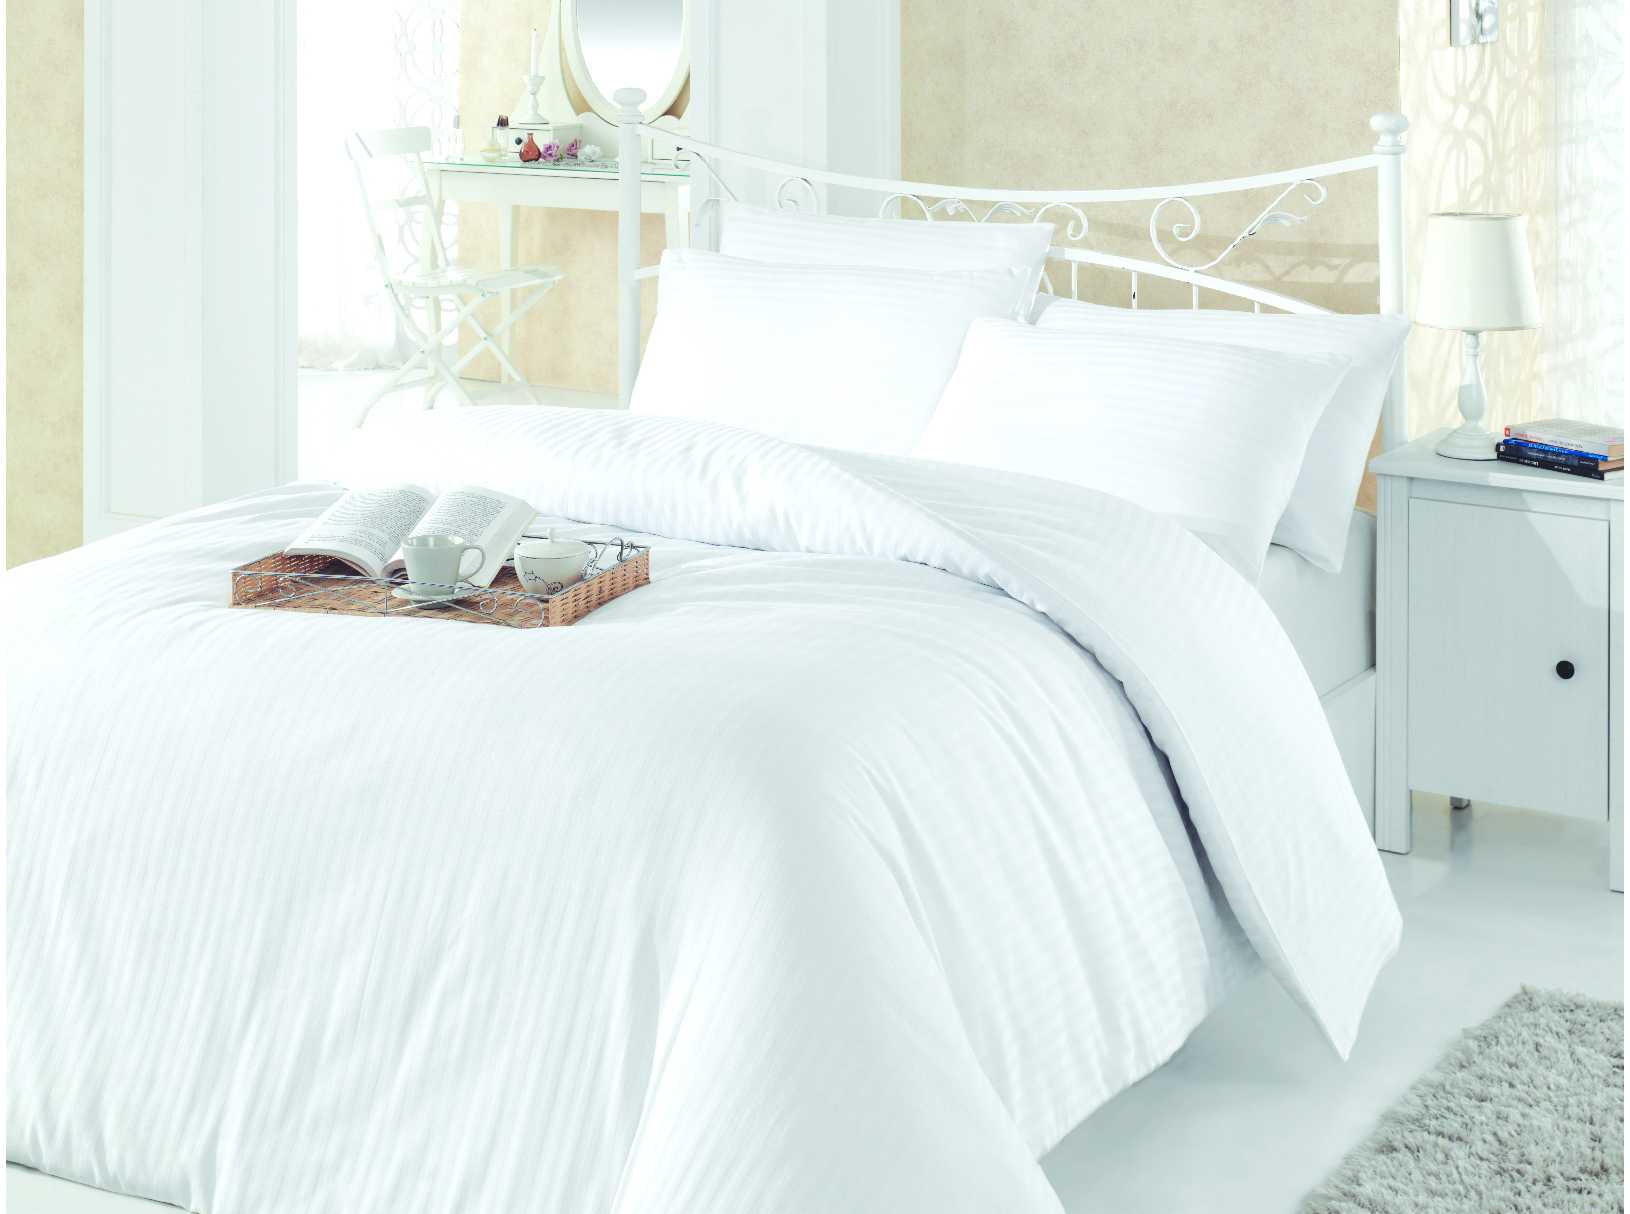 40x60cm Hotelska jastučnica 83Y bela na pruge 1cm La Lidya